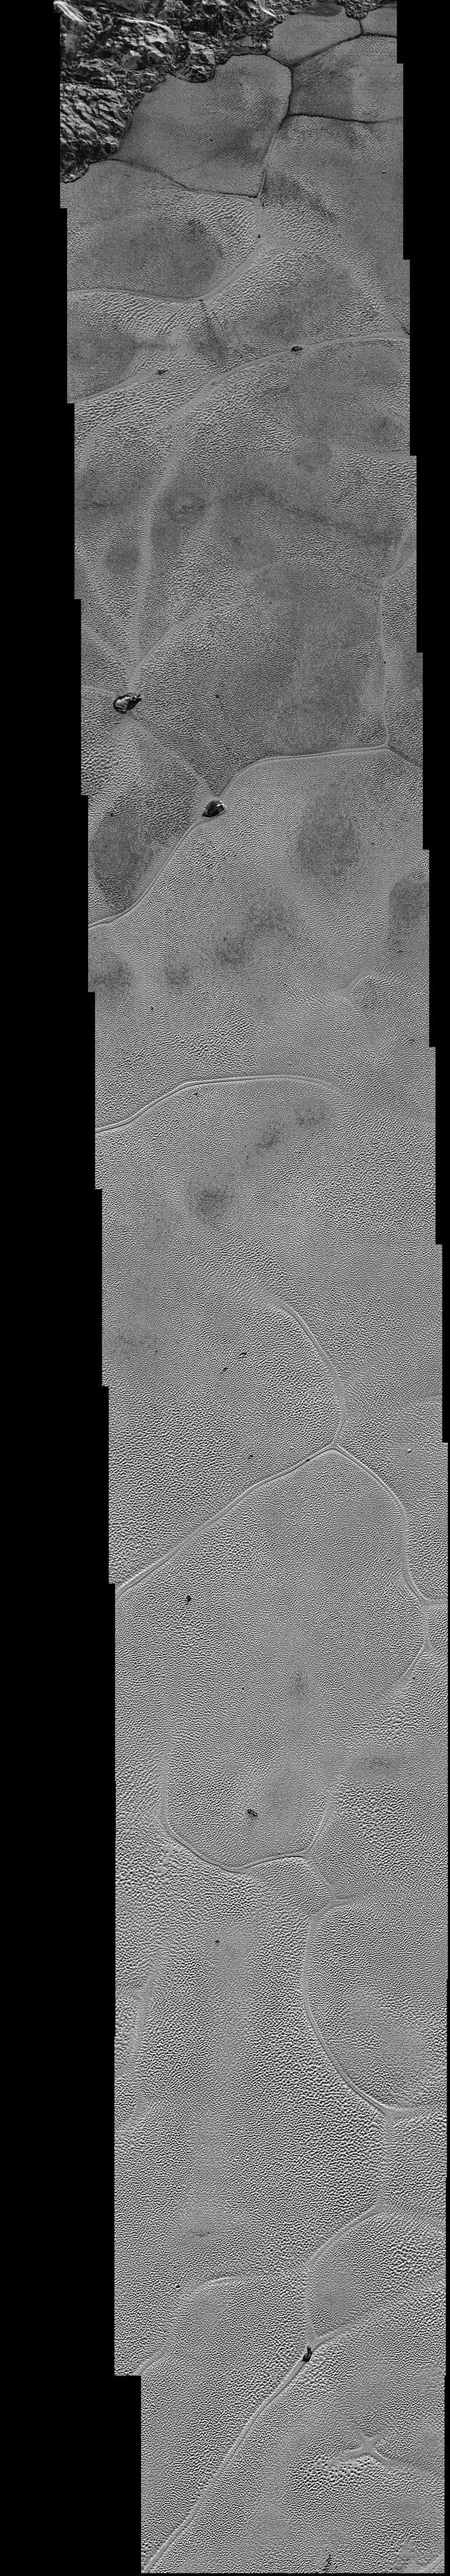 detalnye foto Plutona 2